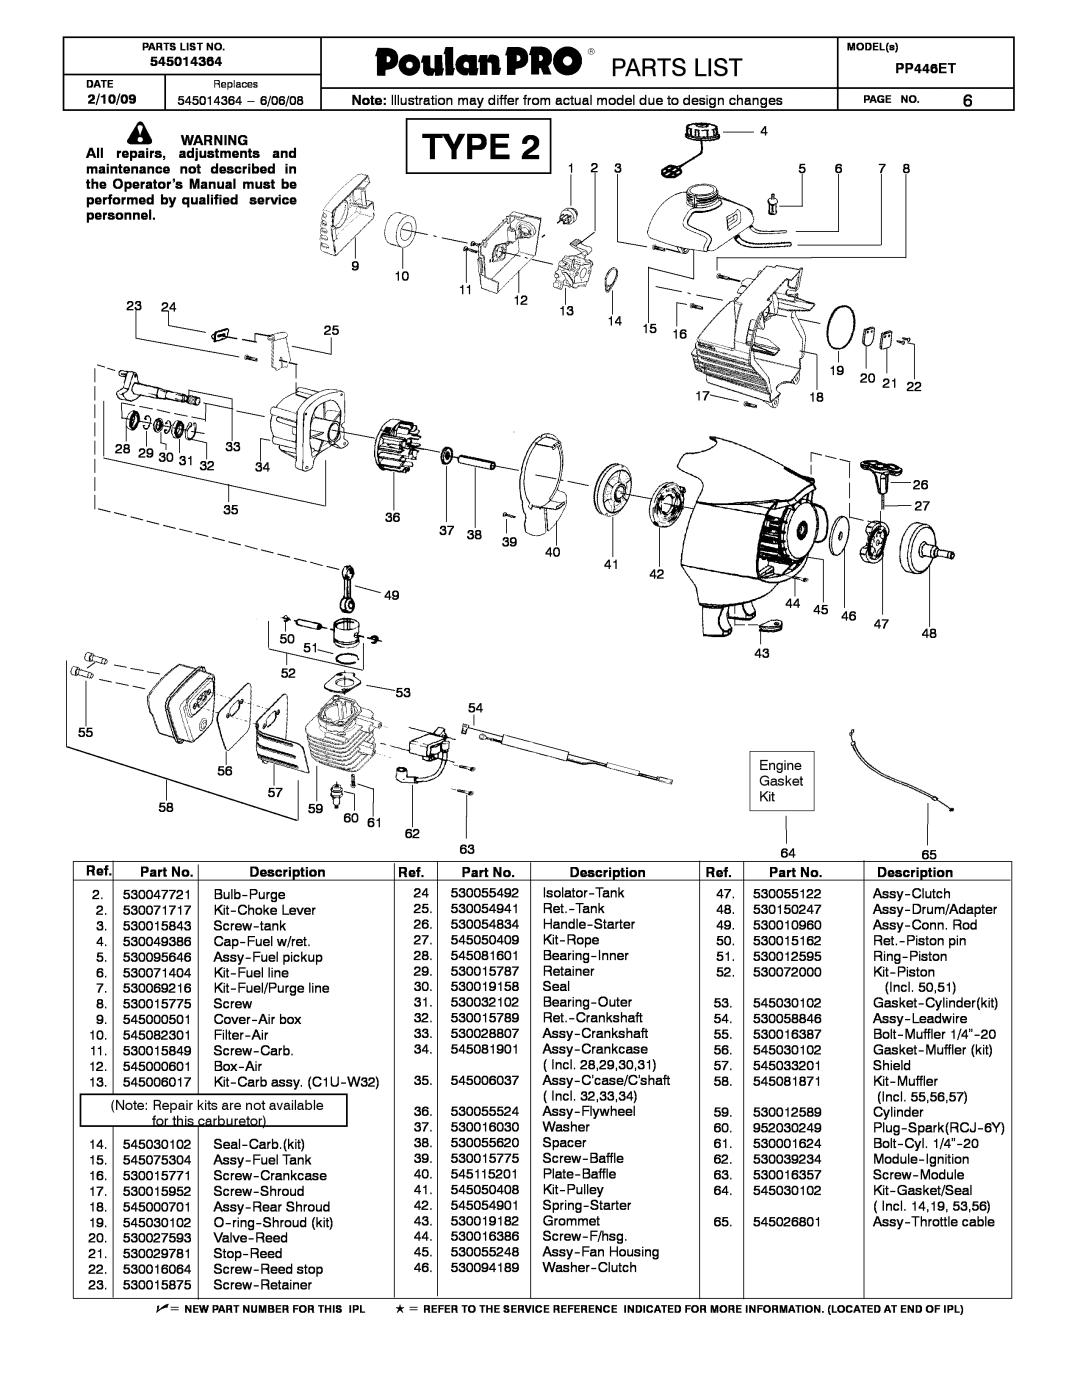 Poulan 545014364 manual Type, Parts List, PP446ET, 2/10/09, All repairs, not described in, personnel, Description 